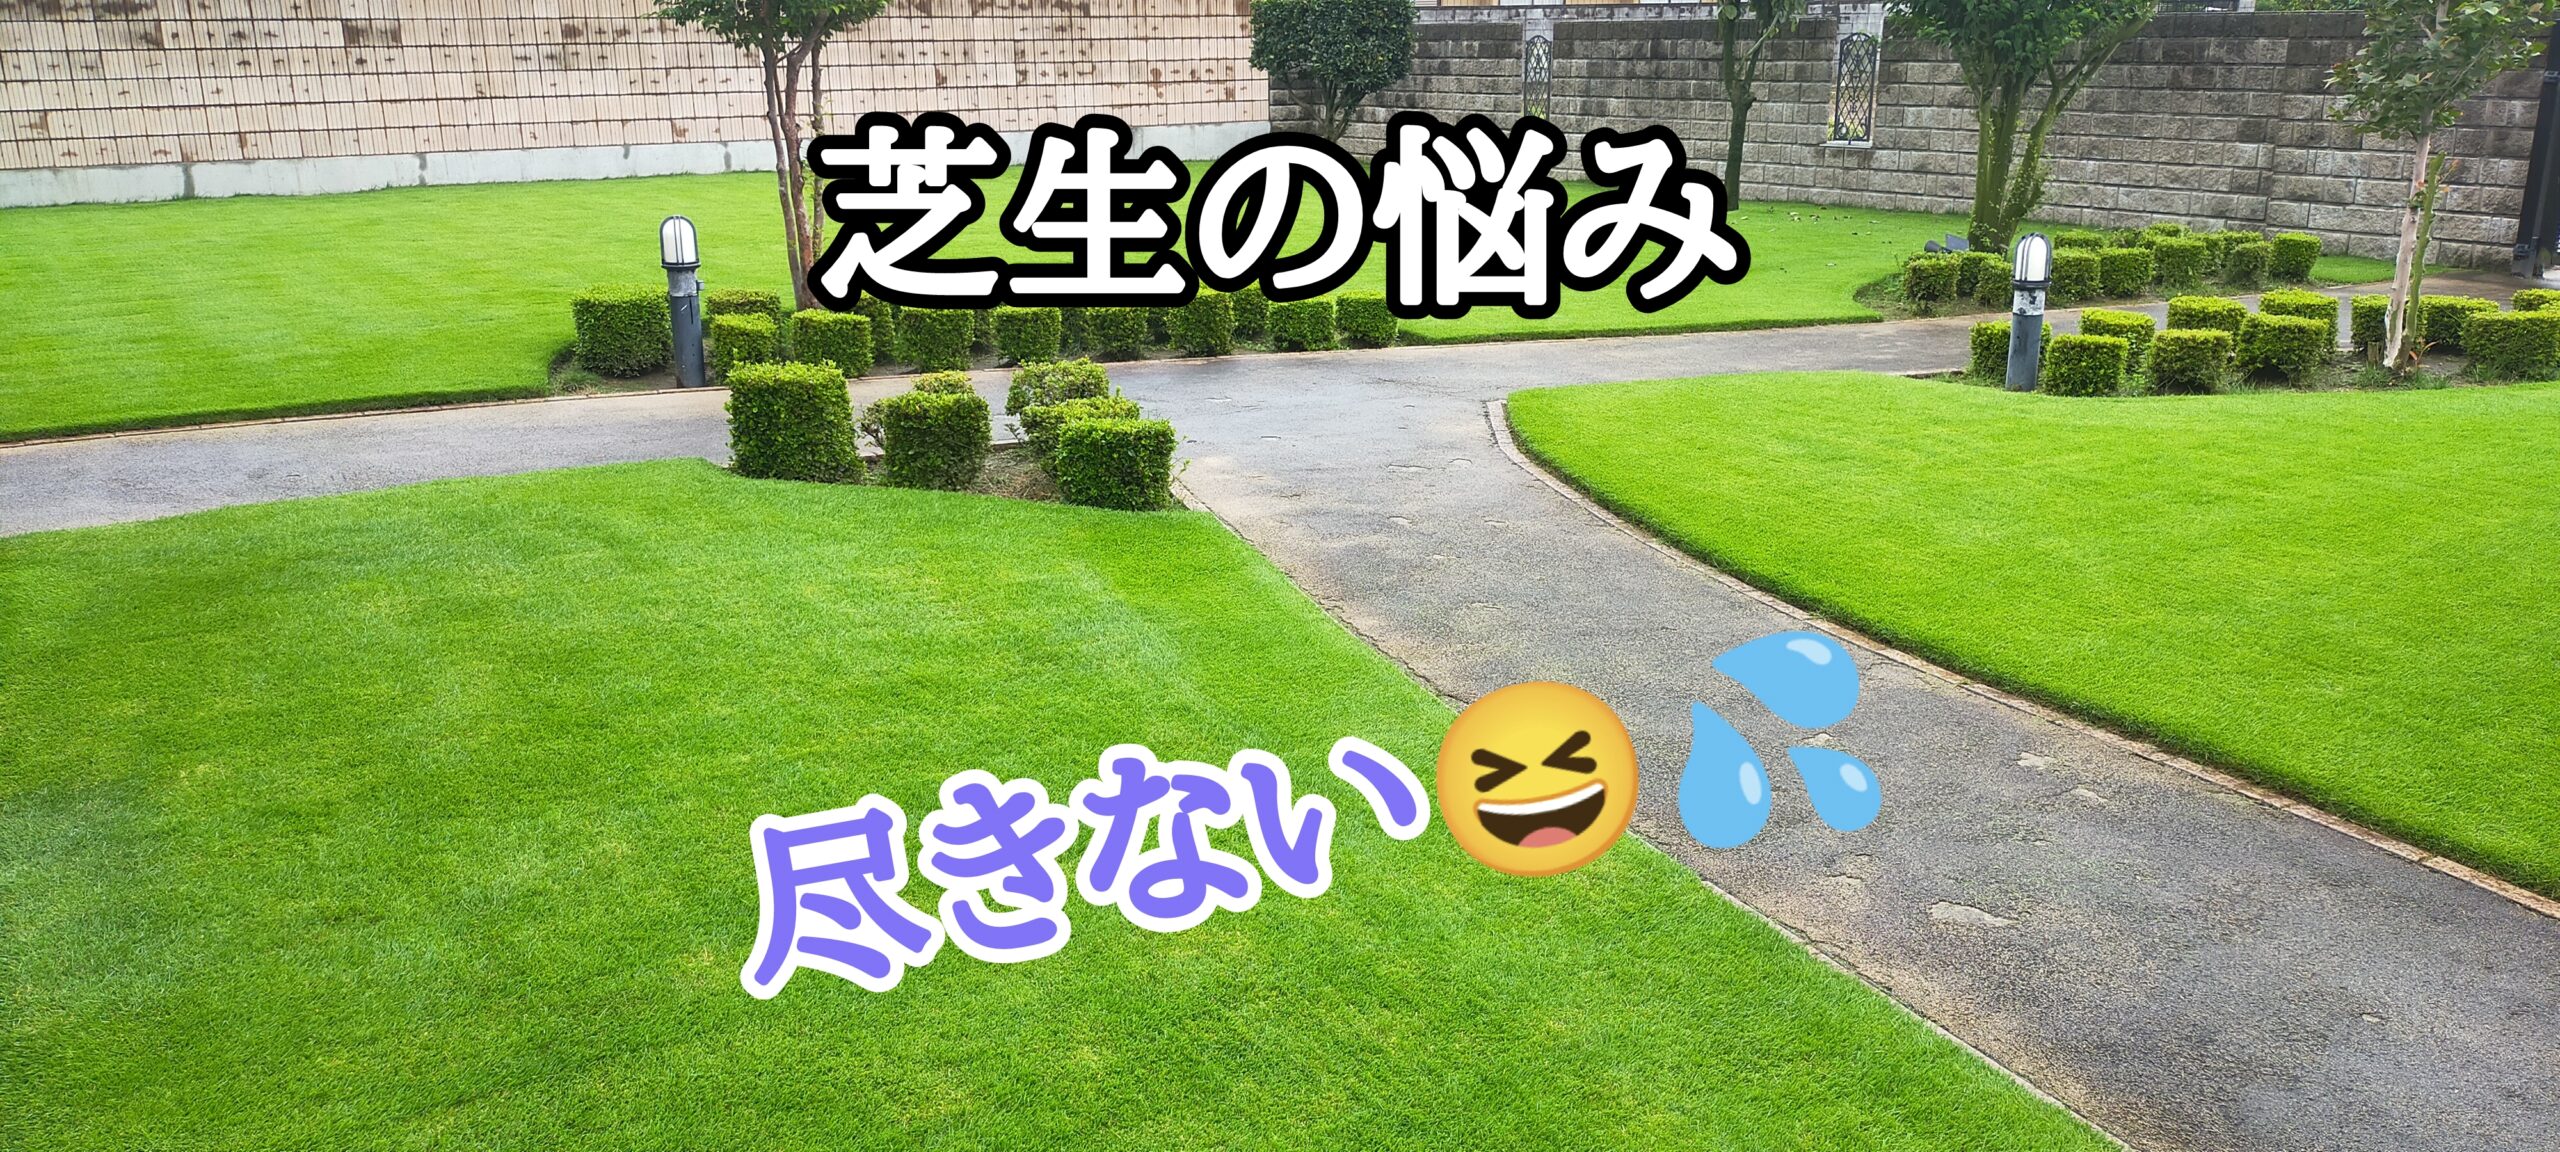 芝生の悩みは尽きない【stand.fm】